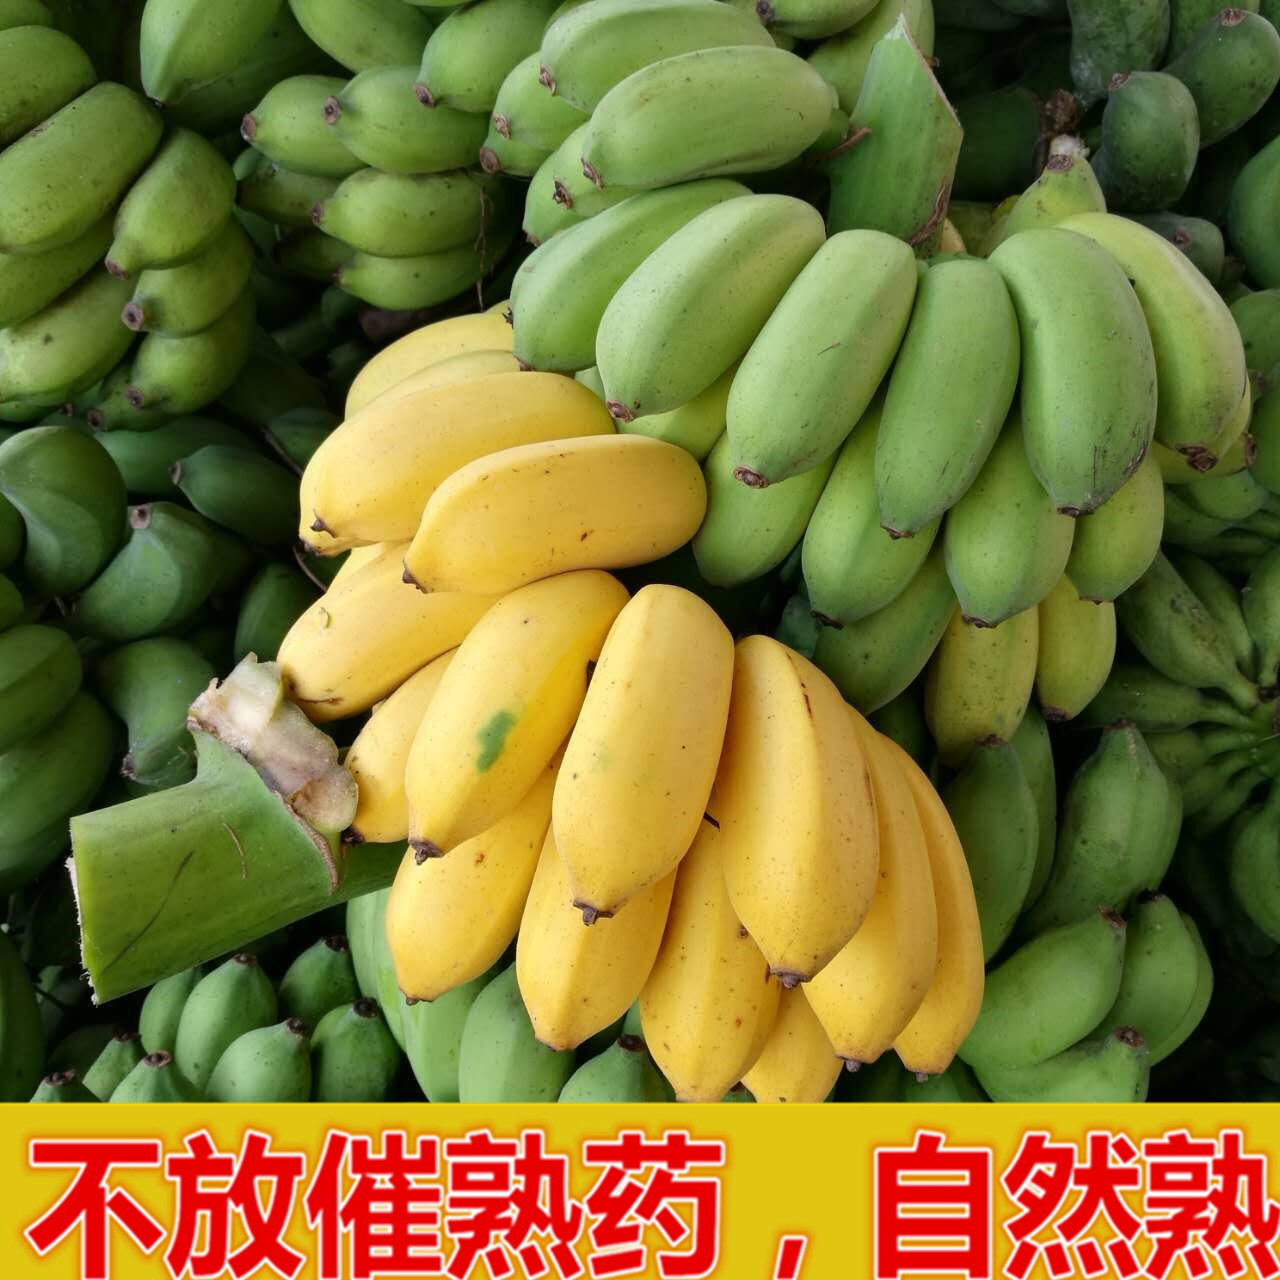 【泡沫箱精装】广西现砍香蕉小米蕉酸甜可口拇指蕉新鲜热带水果